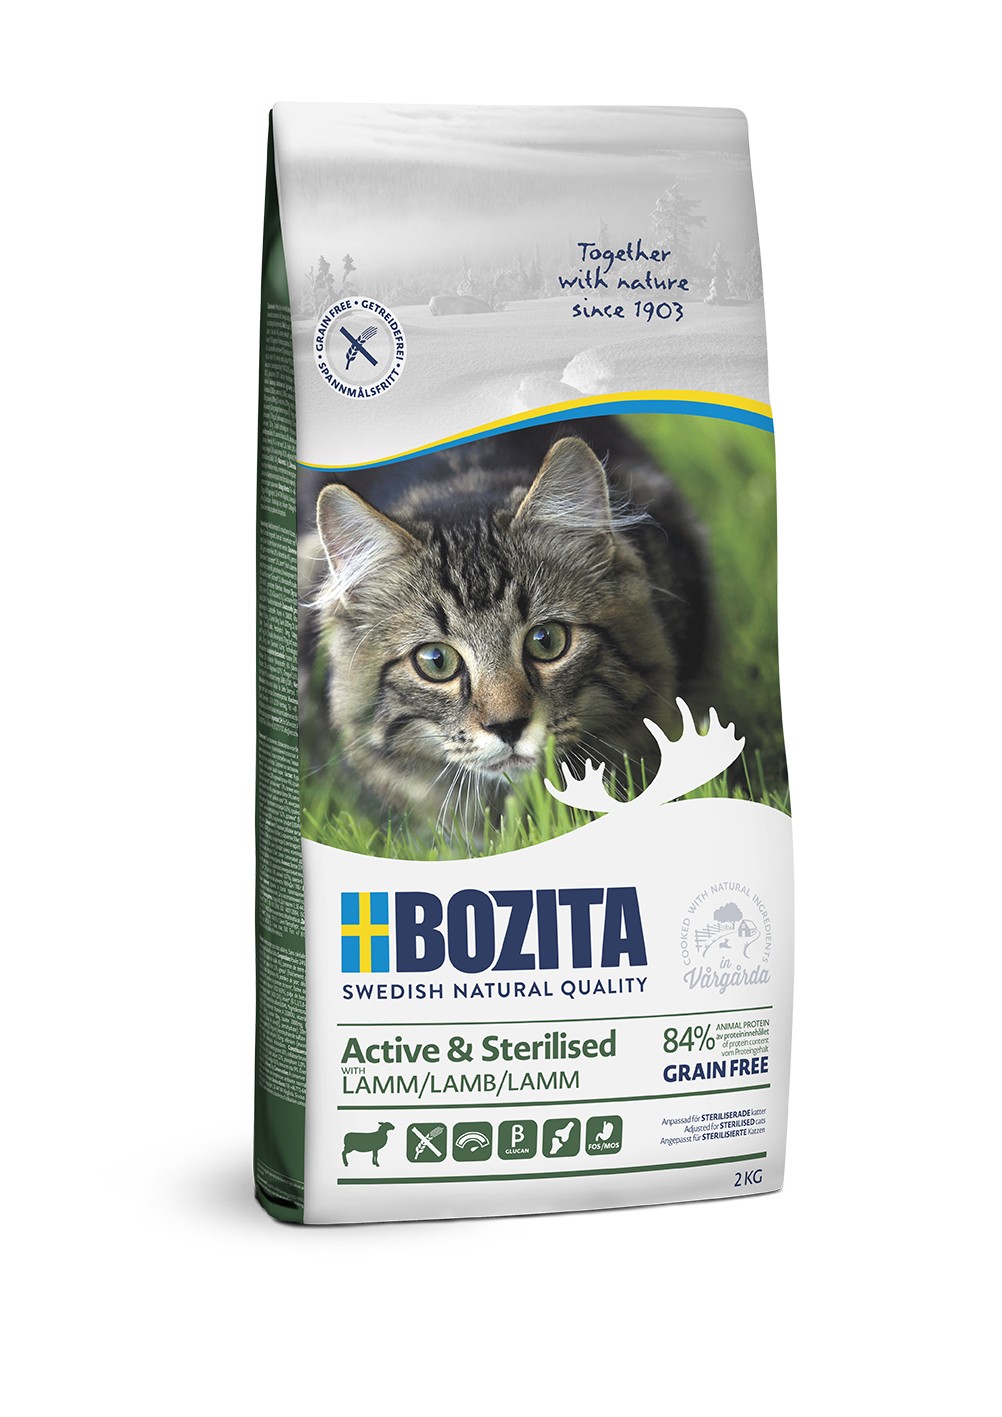 Bozita Active & Sterilized GF Lamb сухой беззерновой корм с ягненком для активных стерилизованных кошек, 2кг